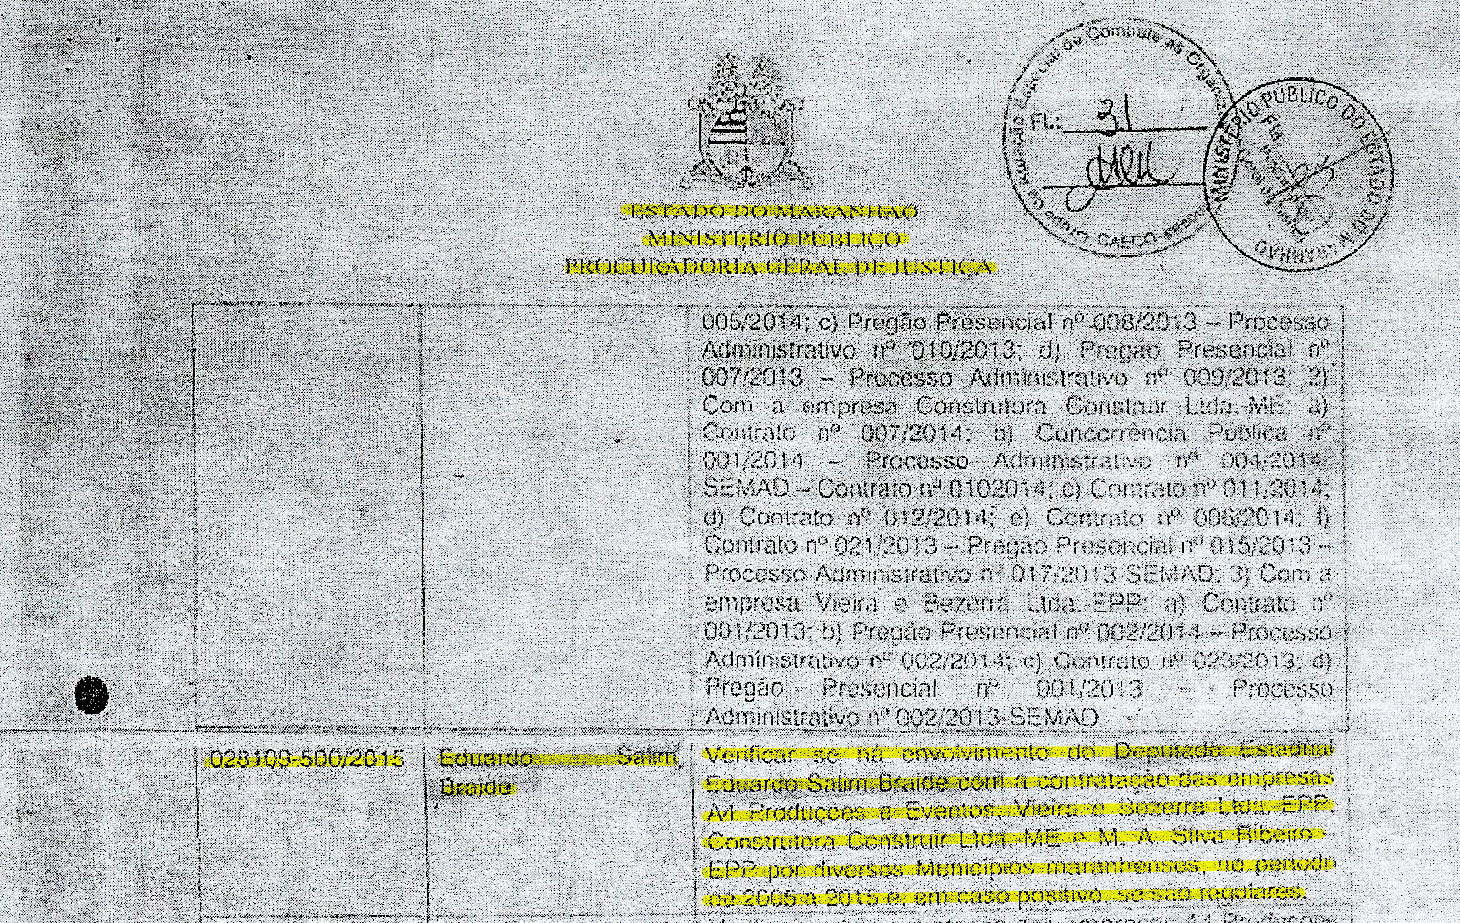 Documento sigiloso da PGJ mostra que Gaeco abriu investigação para saber se há a participação de Eduardo Braide no esquema criminoso